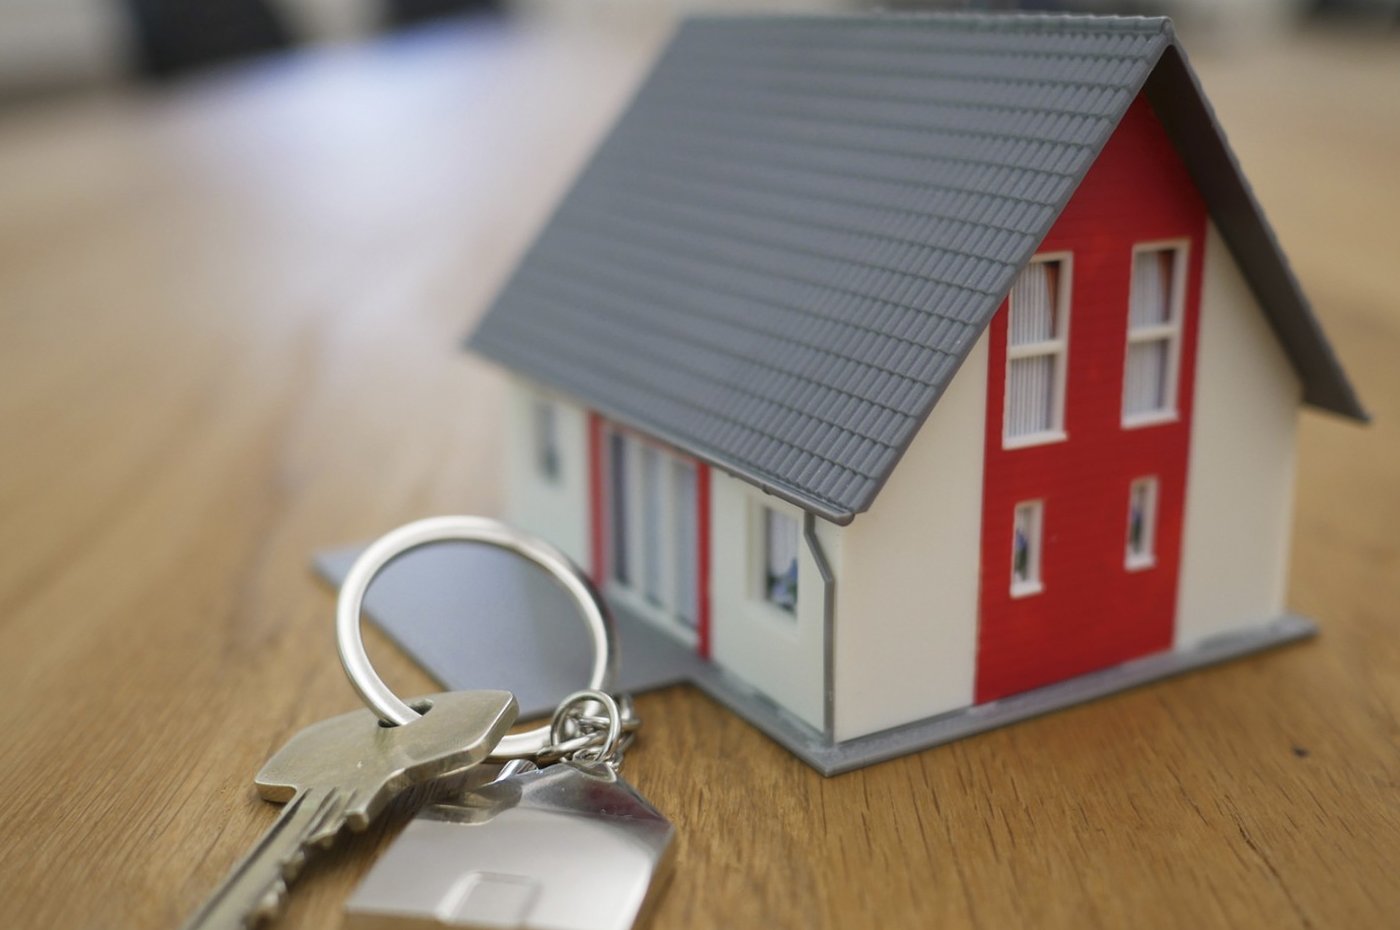 Подписан указ об ипотечном жилищном кредитовании. Что меняется для граждан и банков?